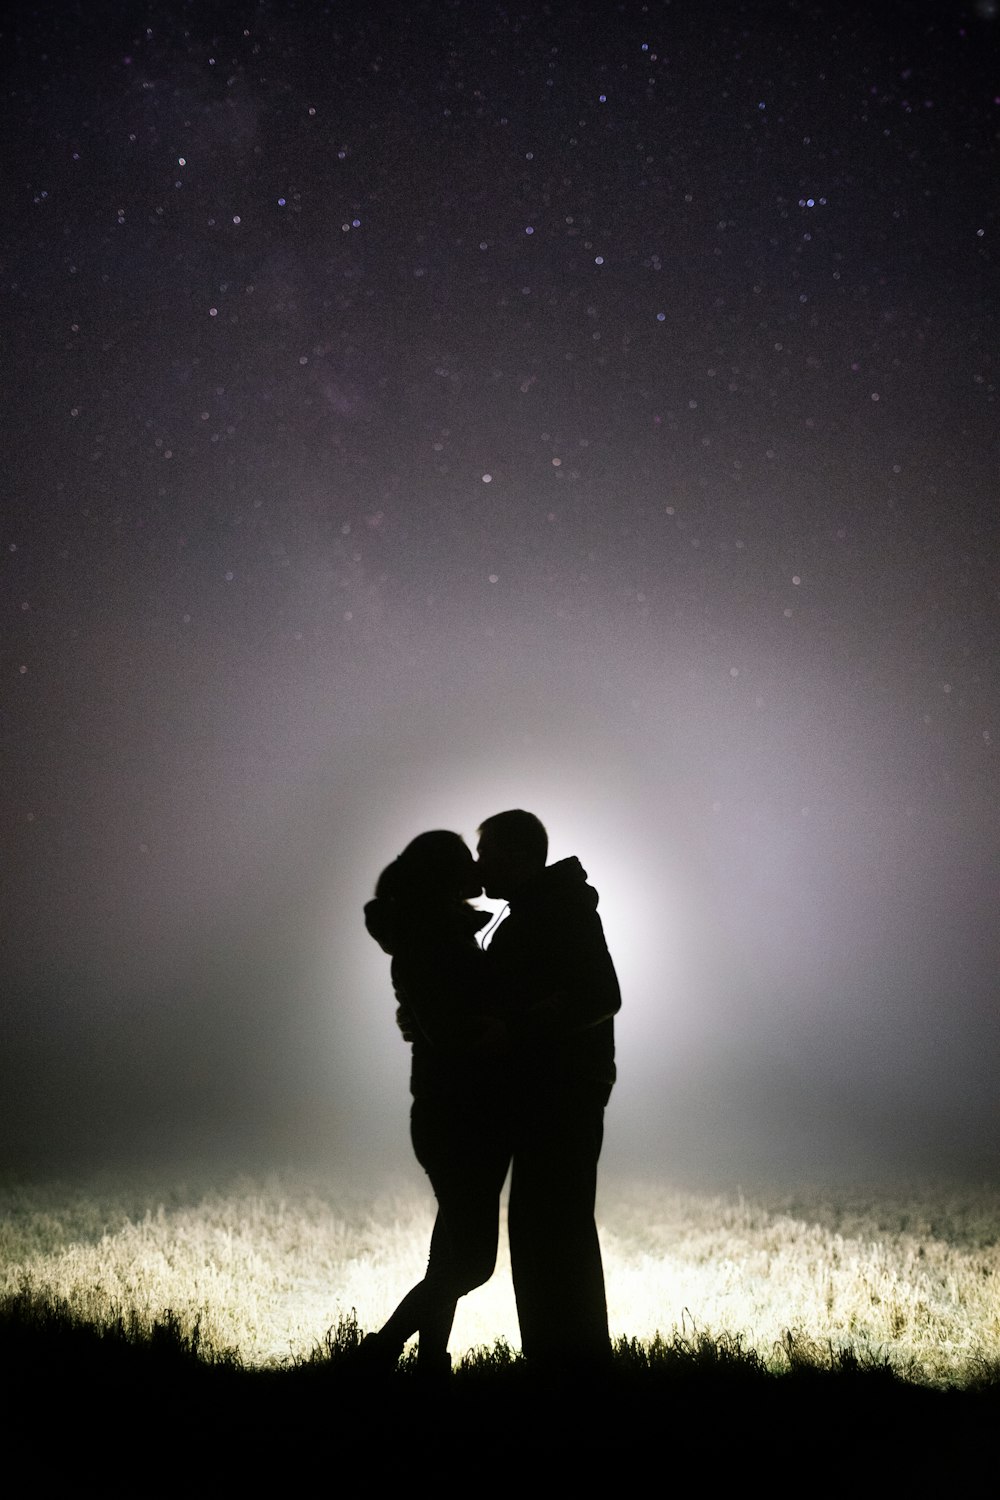 silueta de hombre y mujer besándose bajo la noche estrellada